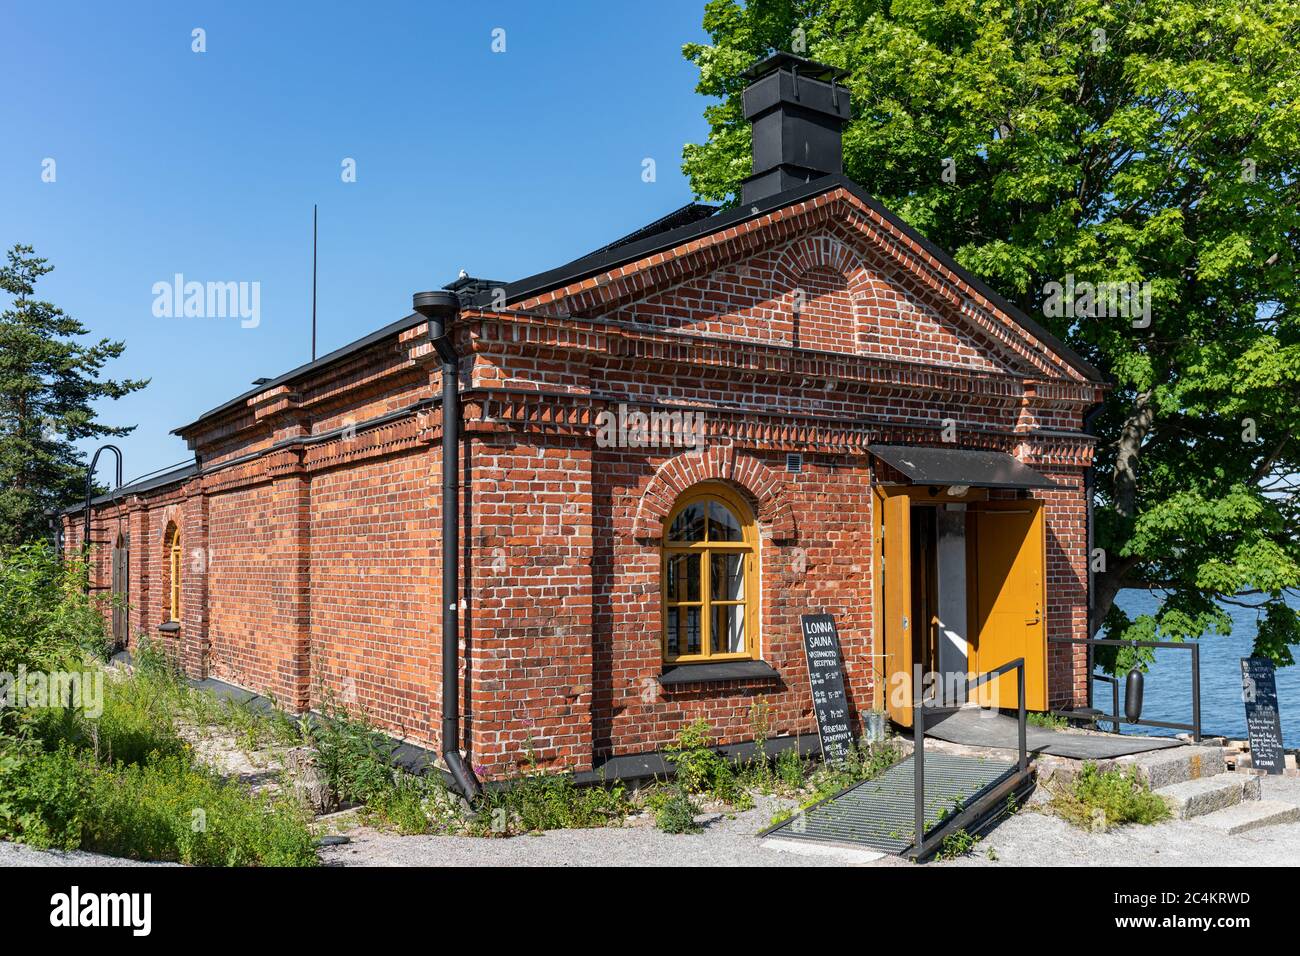 Réception au sauna public de l'île Lonna dans un ancien bâtiment militaire en briques rouges de l'archipel d'Helsinki, en Finlande Banque D'Images